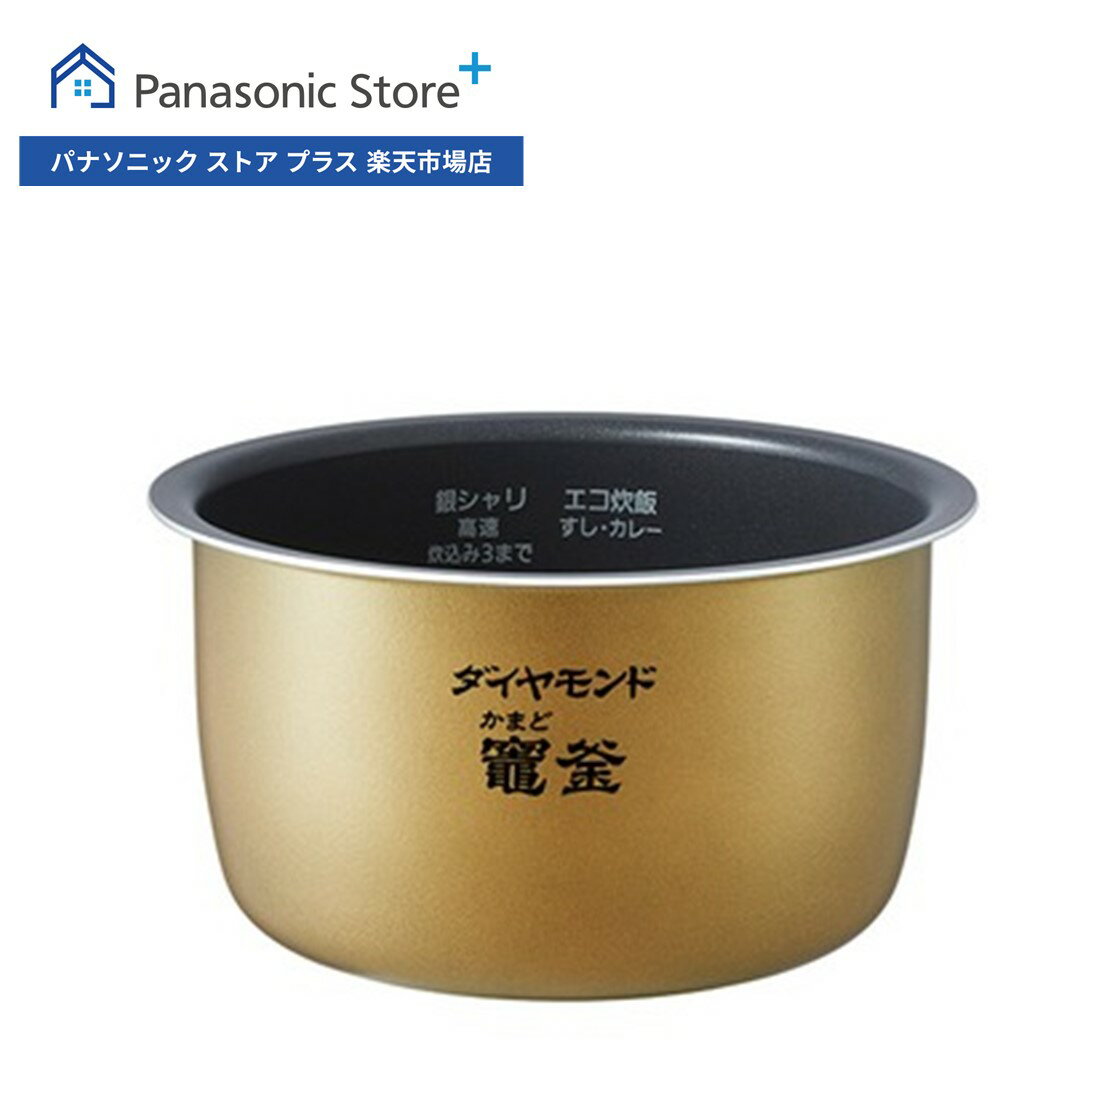 【公式店】 パナソニック 内釜 ARE50-L48 炊飯器 消耗品